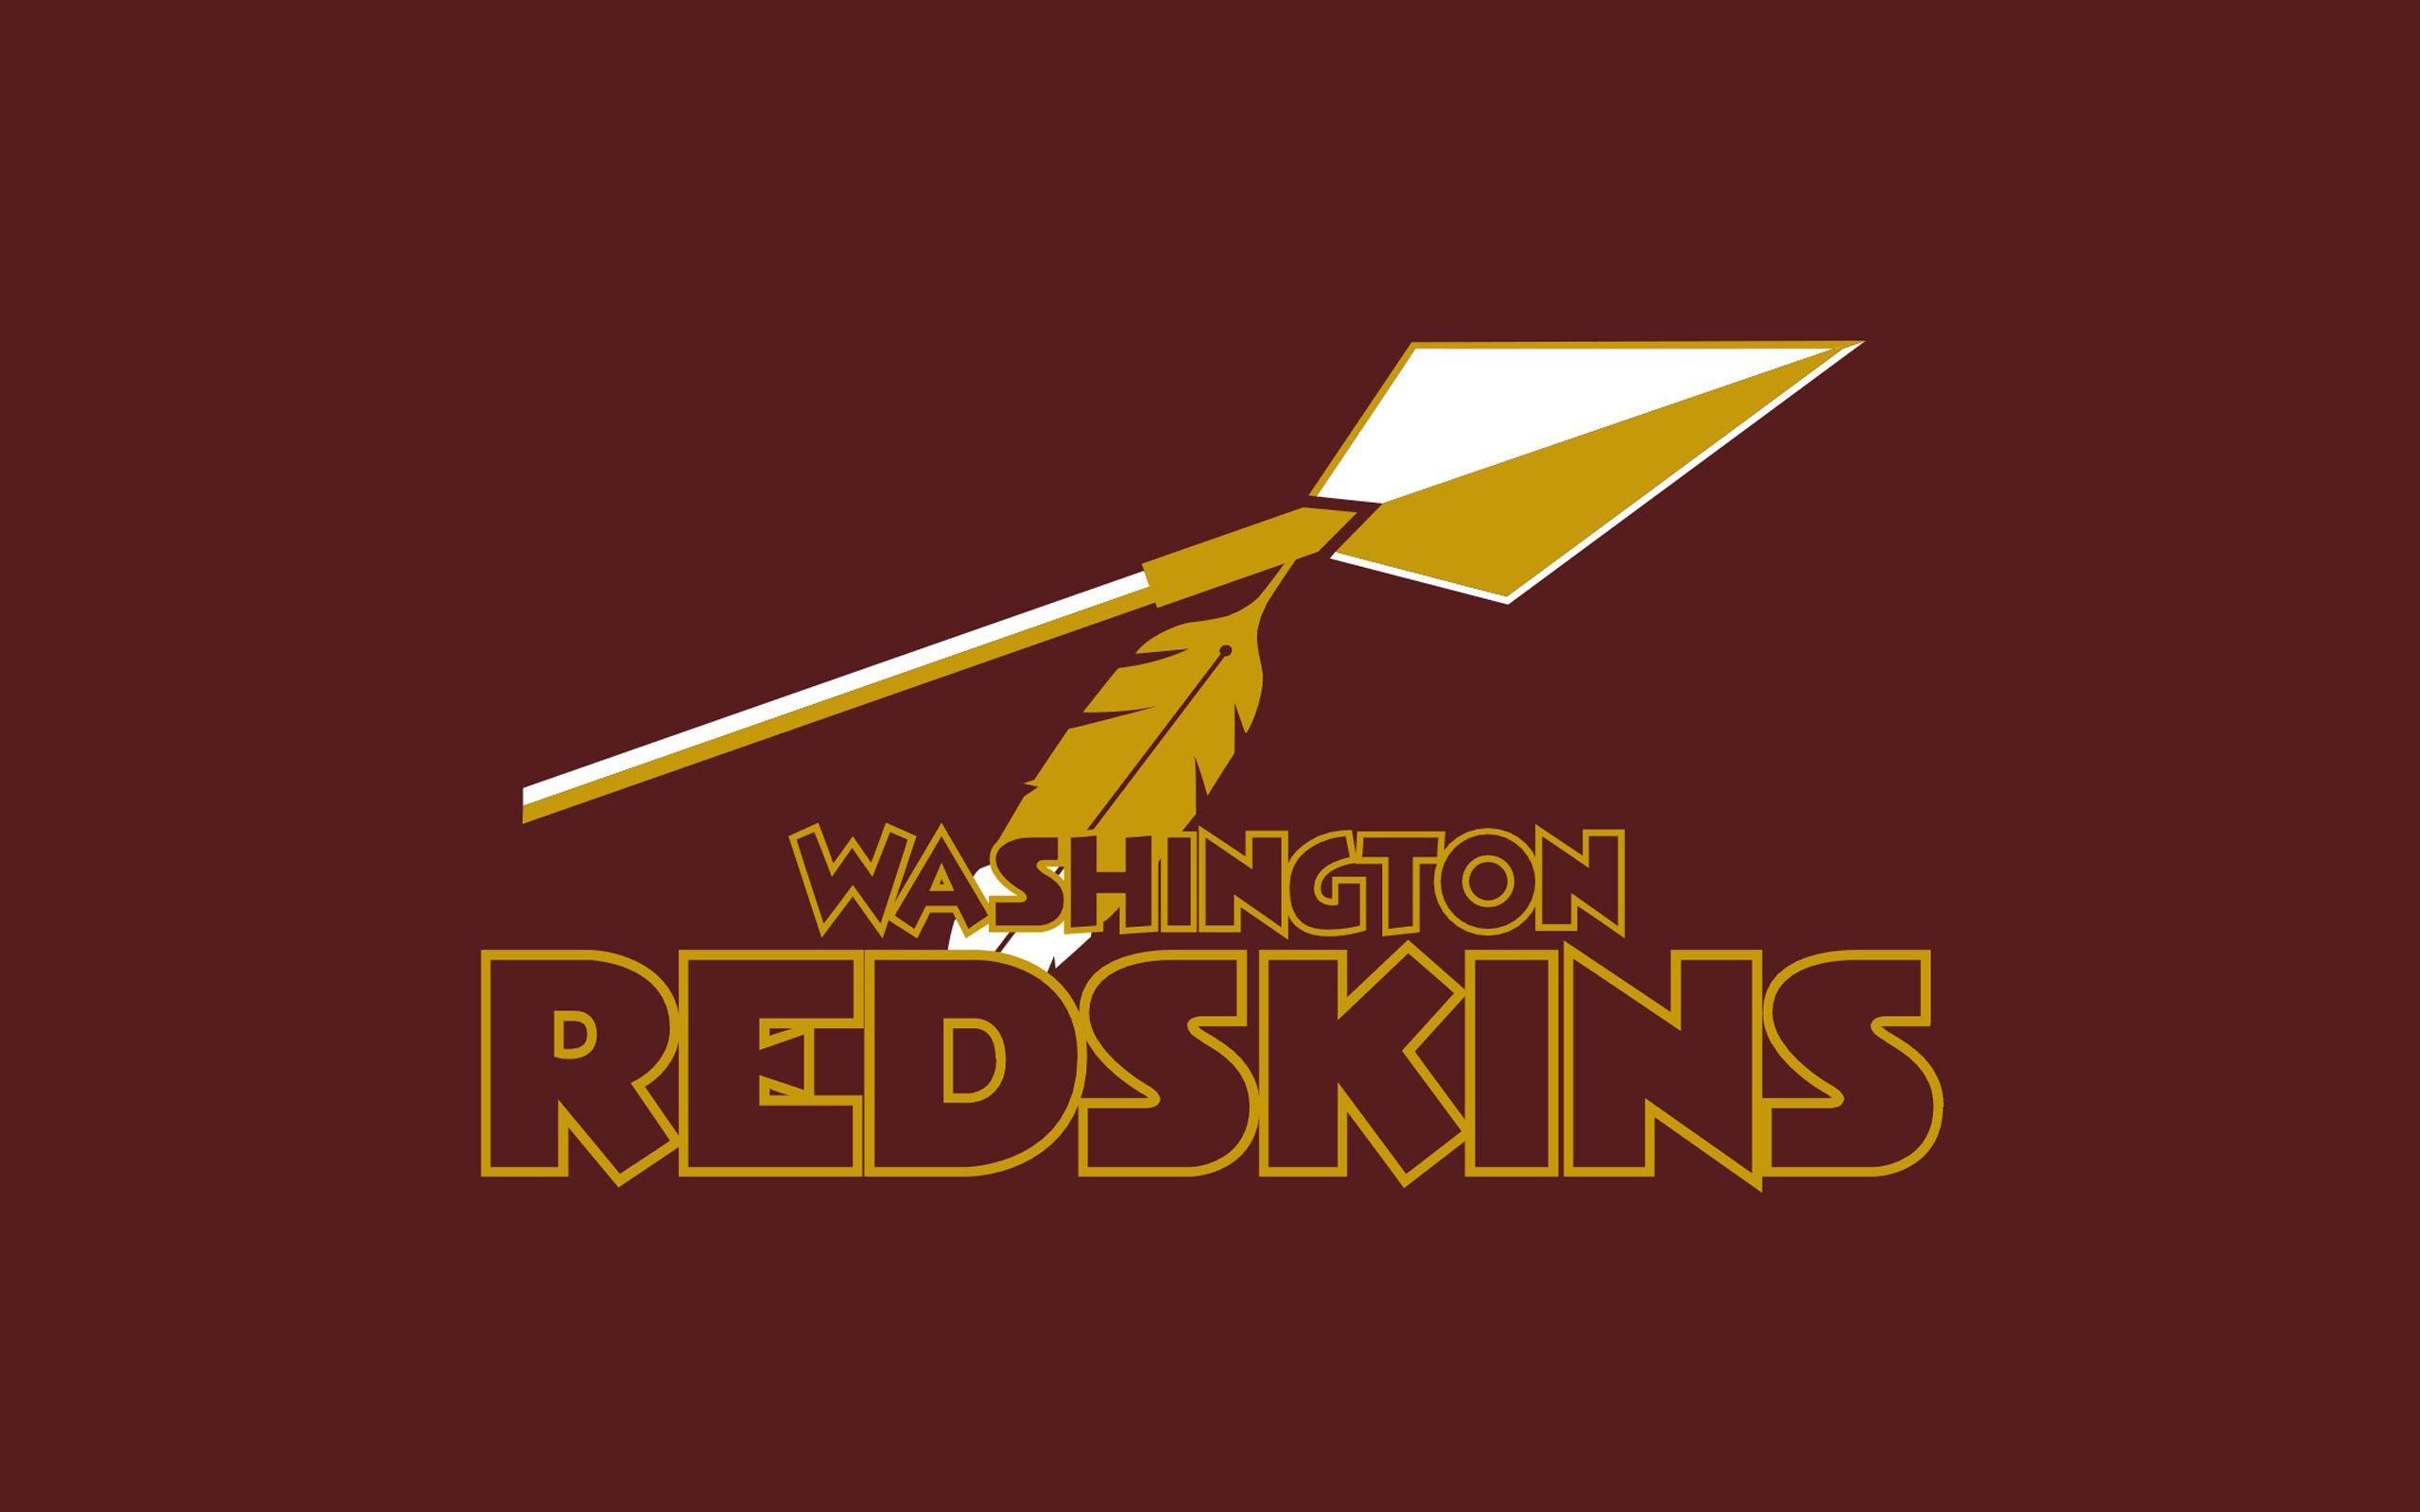 NFL Redskins Logo - NFL Logo Team Washington Redskins wallpaper 2018 in Football